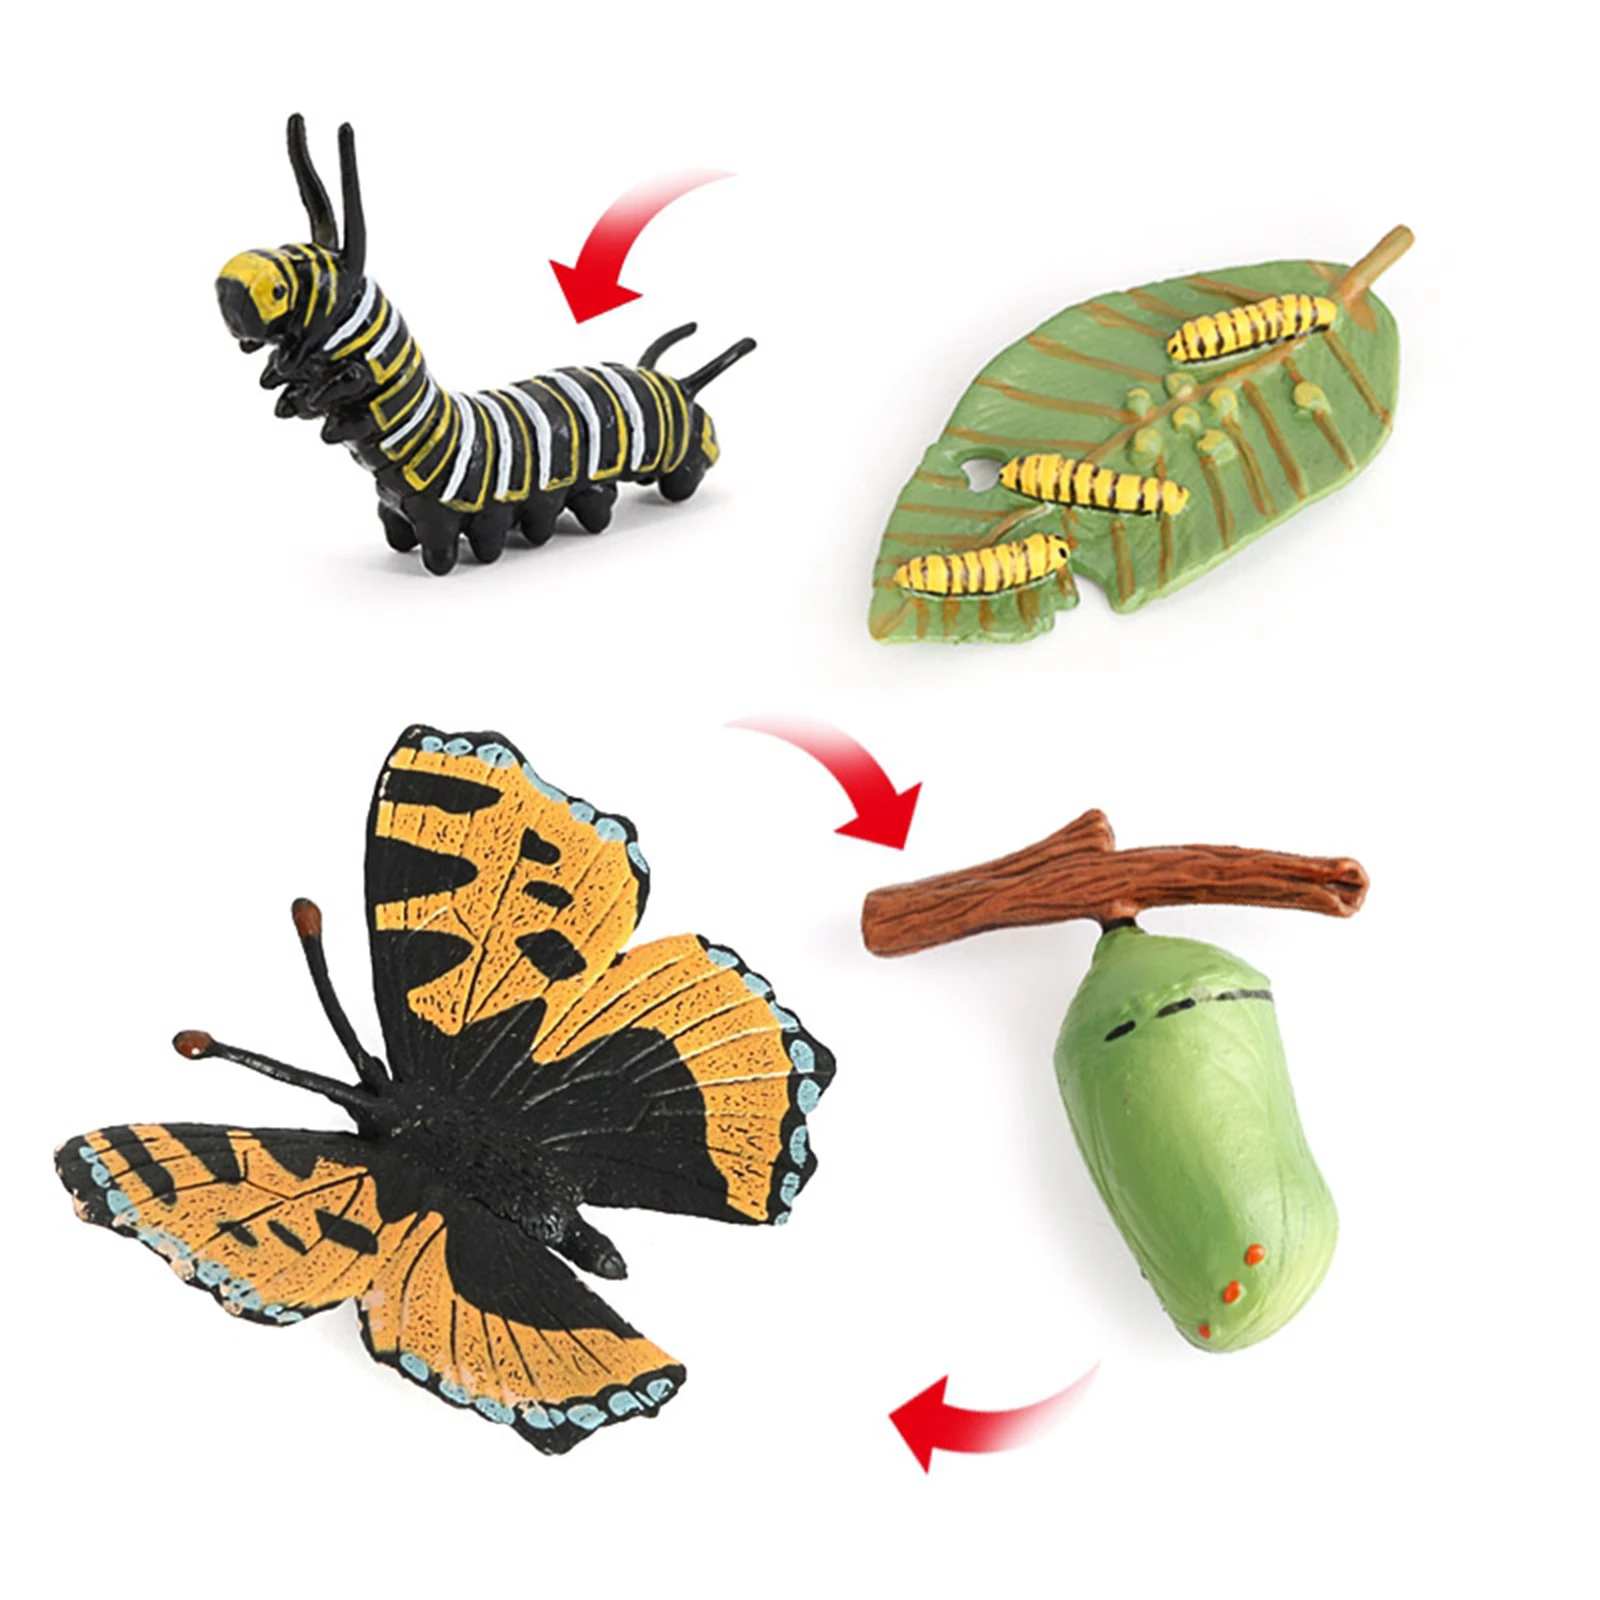 Детские Образовательные Игрушки для раннего развития детей дошкольногоИгрушка Бабочка жизненный цикл модель подарок